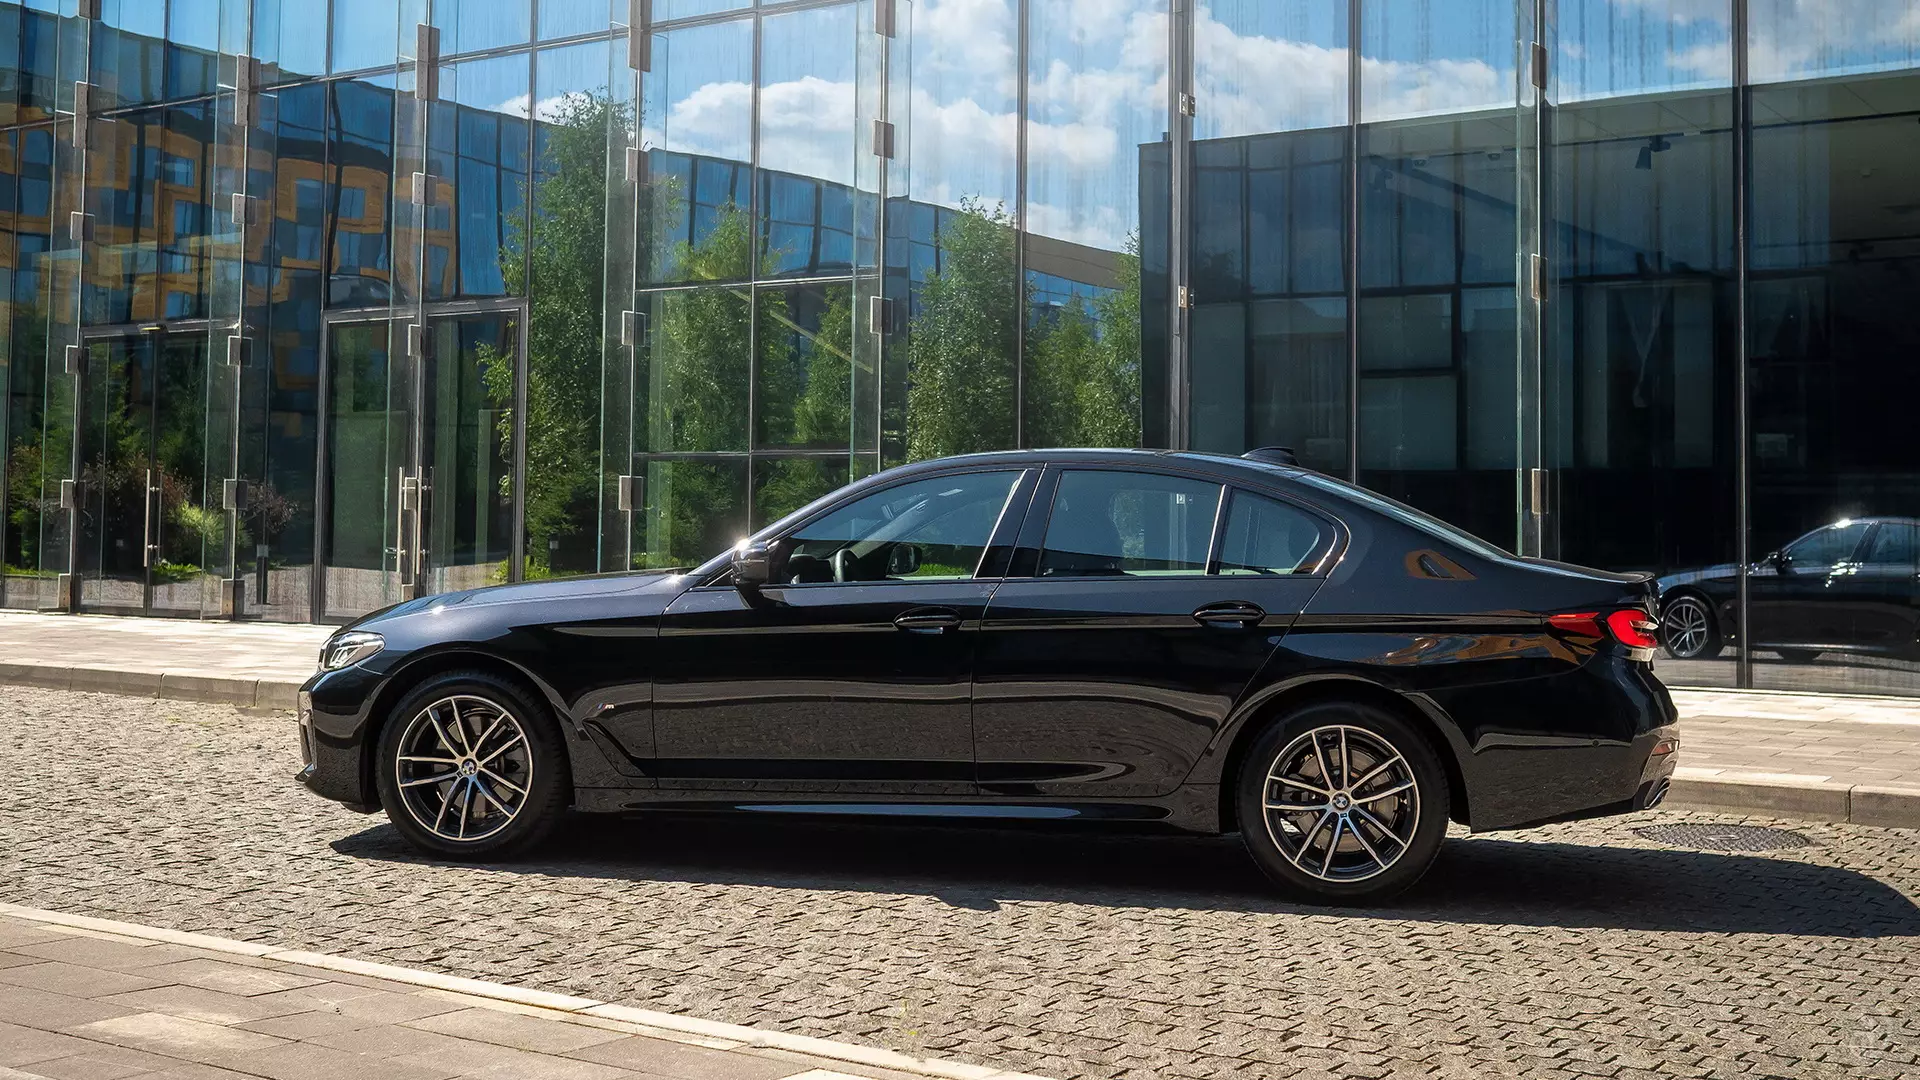 Аренда BMW 520d G30 в Санкт-Петербурге. Фото 3